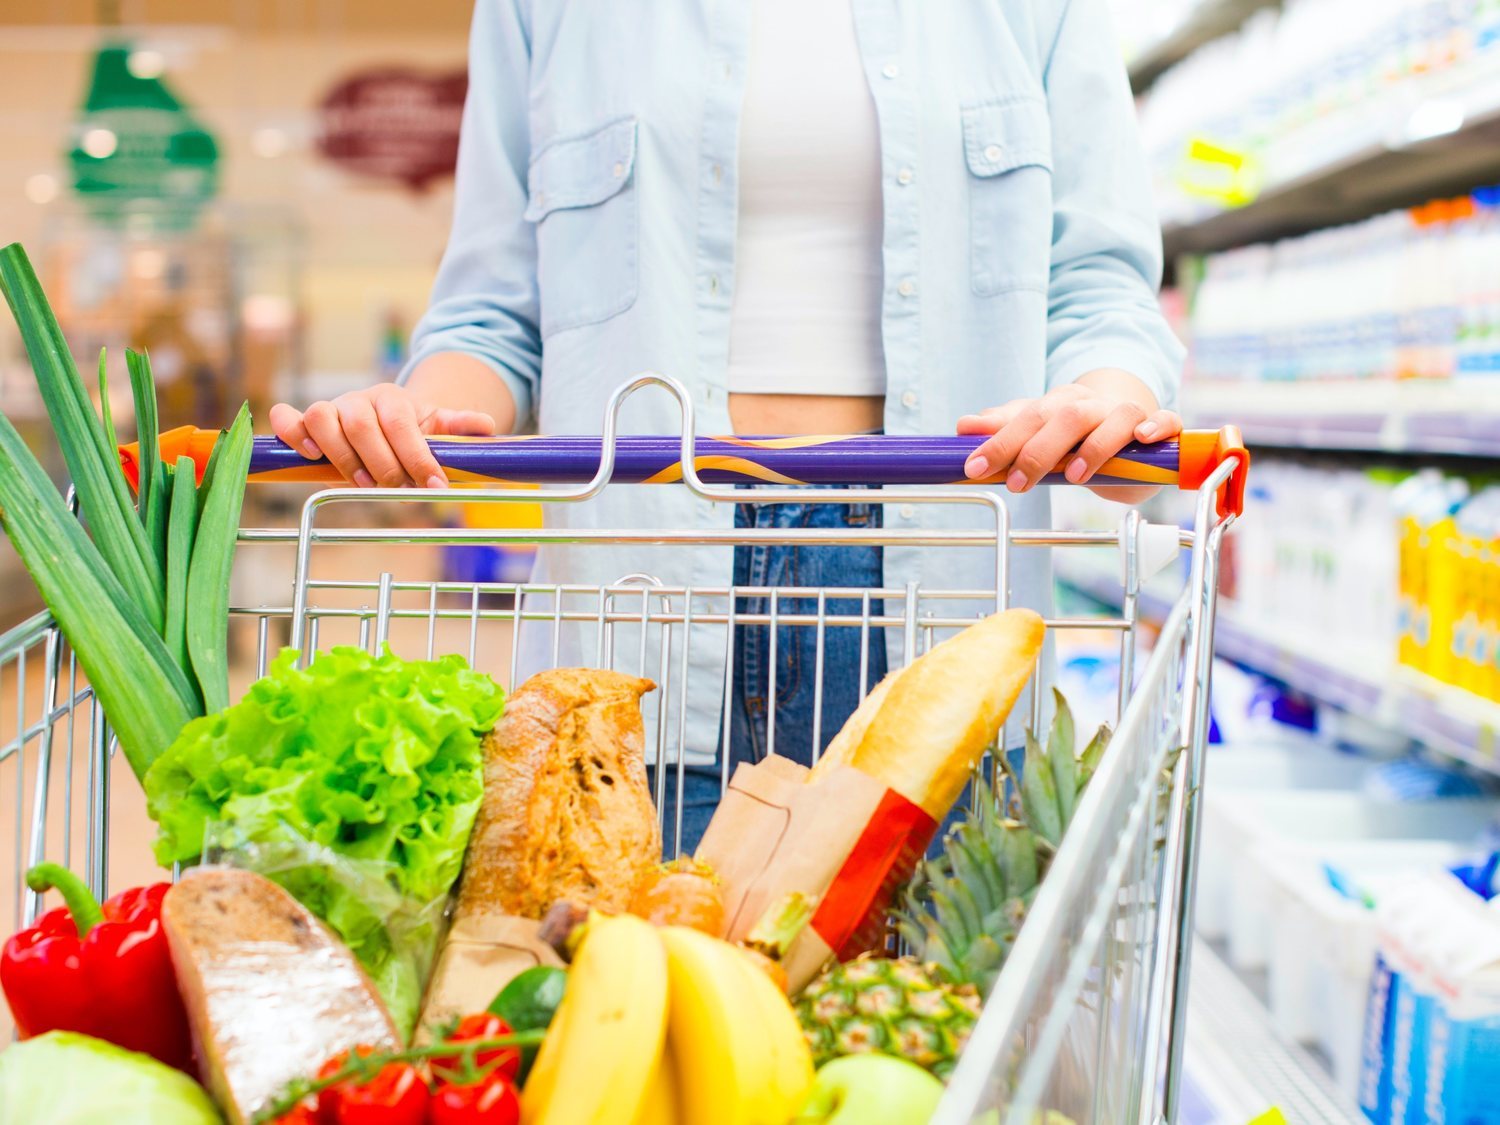 El ranking de los supermercados más baratos en 2020 según la OCU sorprende y deja fuera a Mercadona